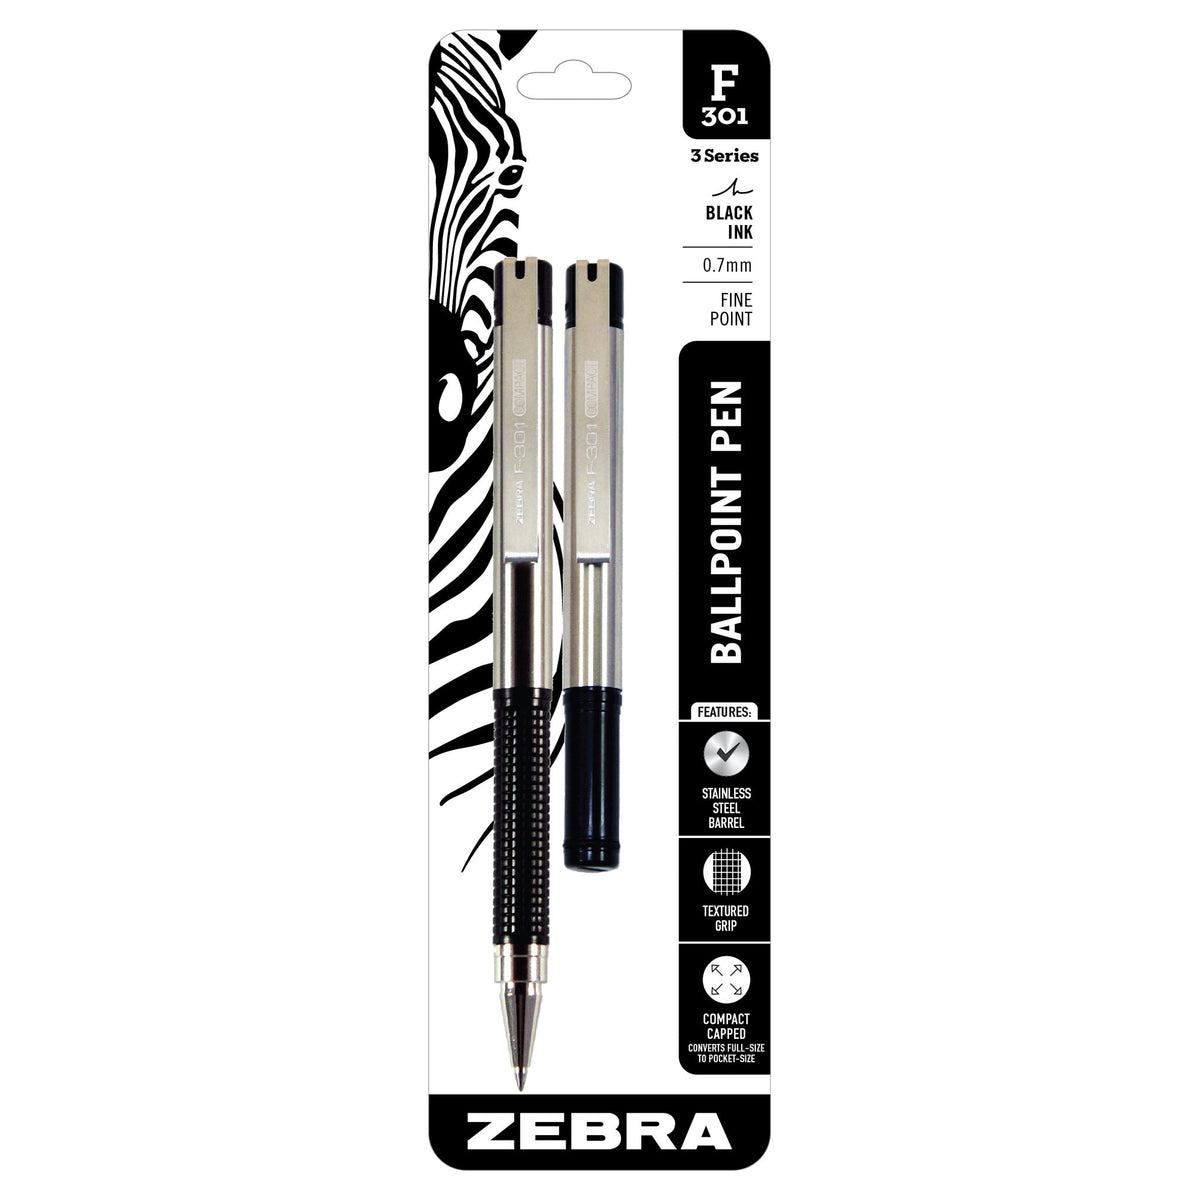 Zebra Pens Review 